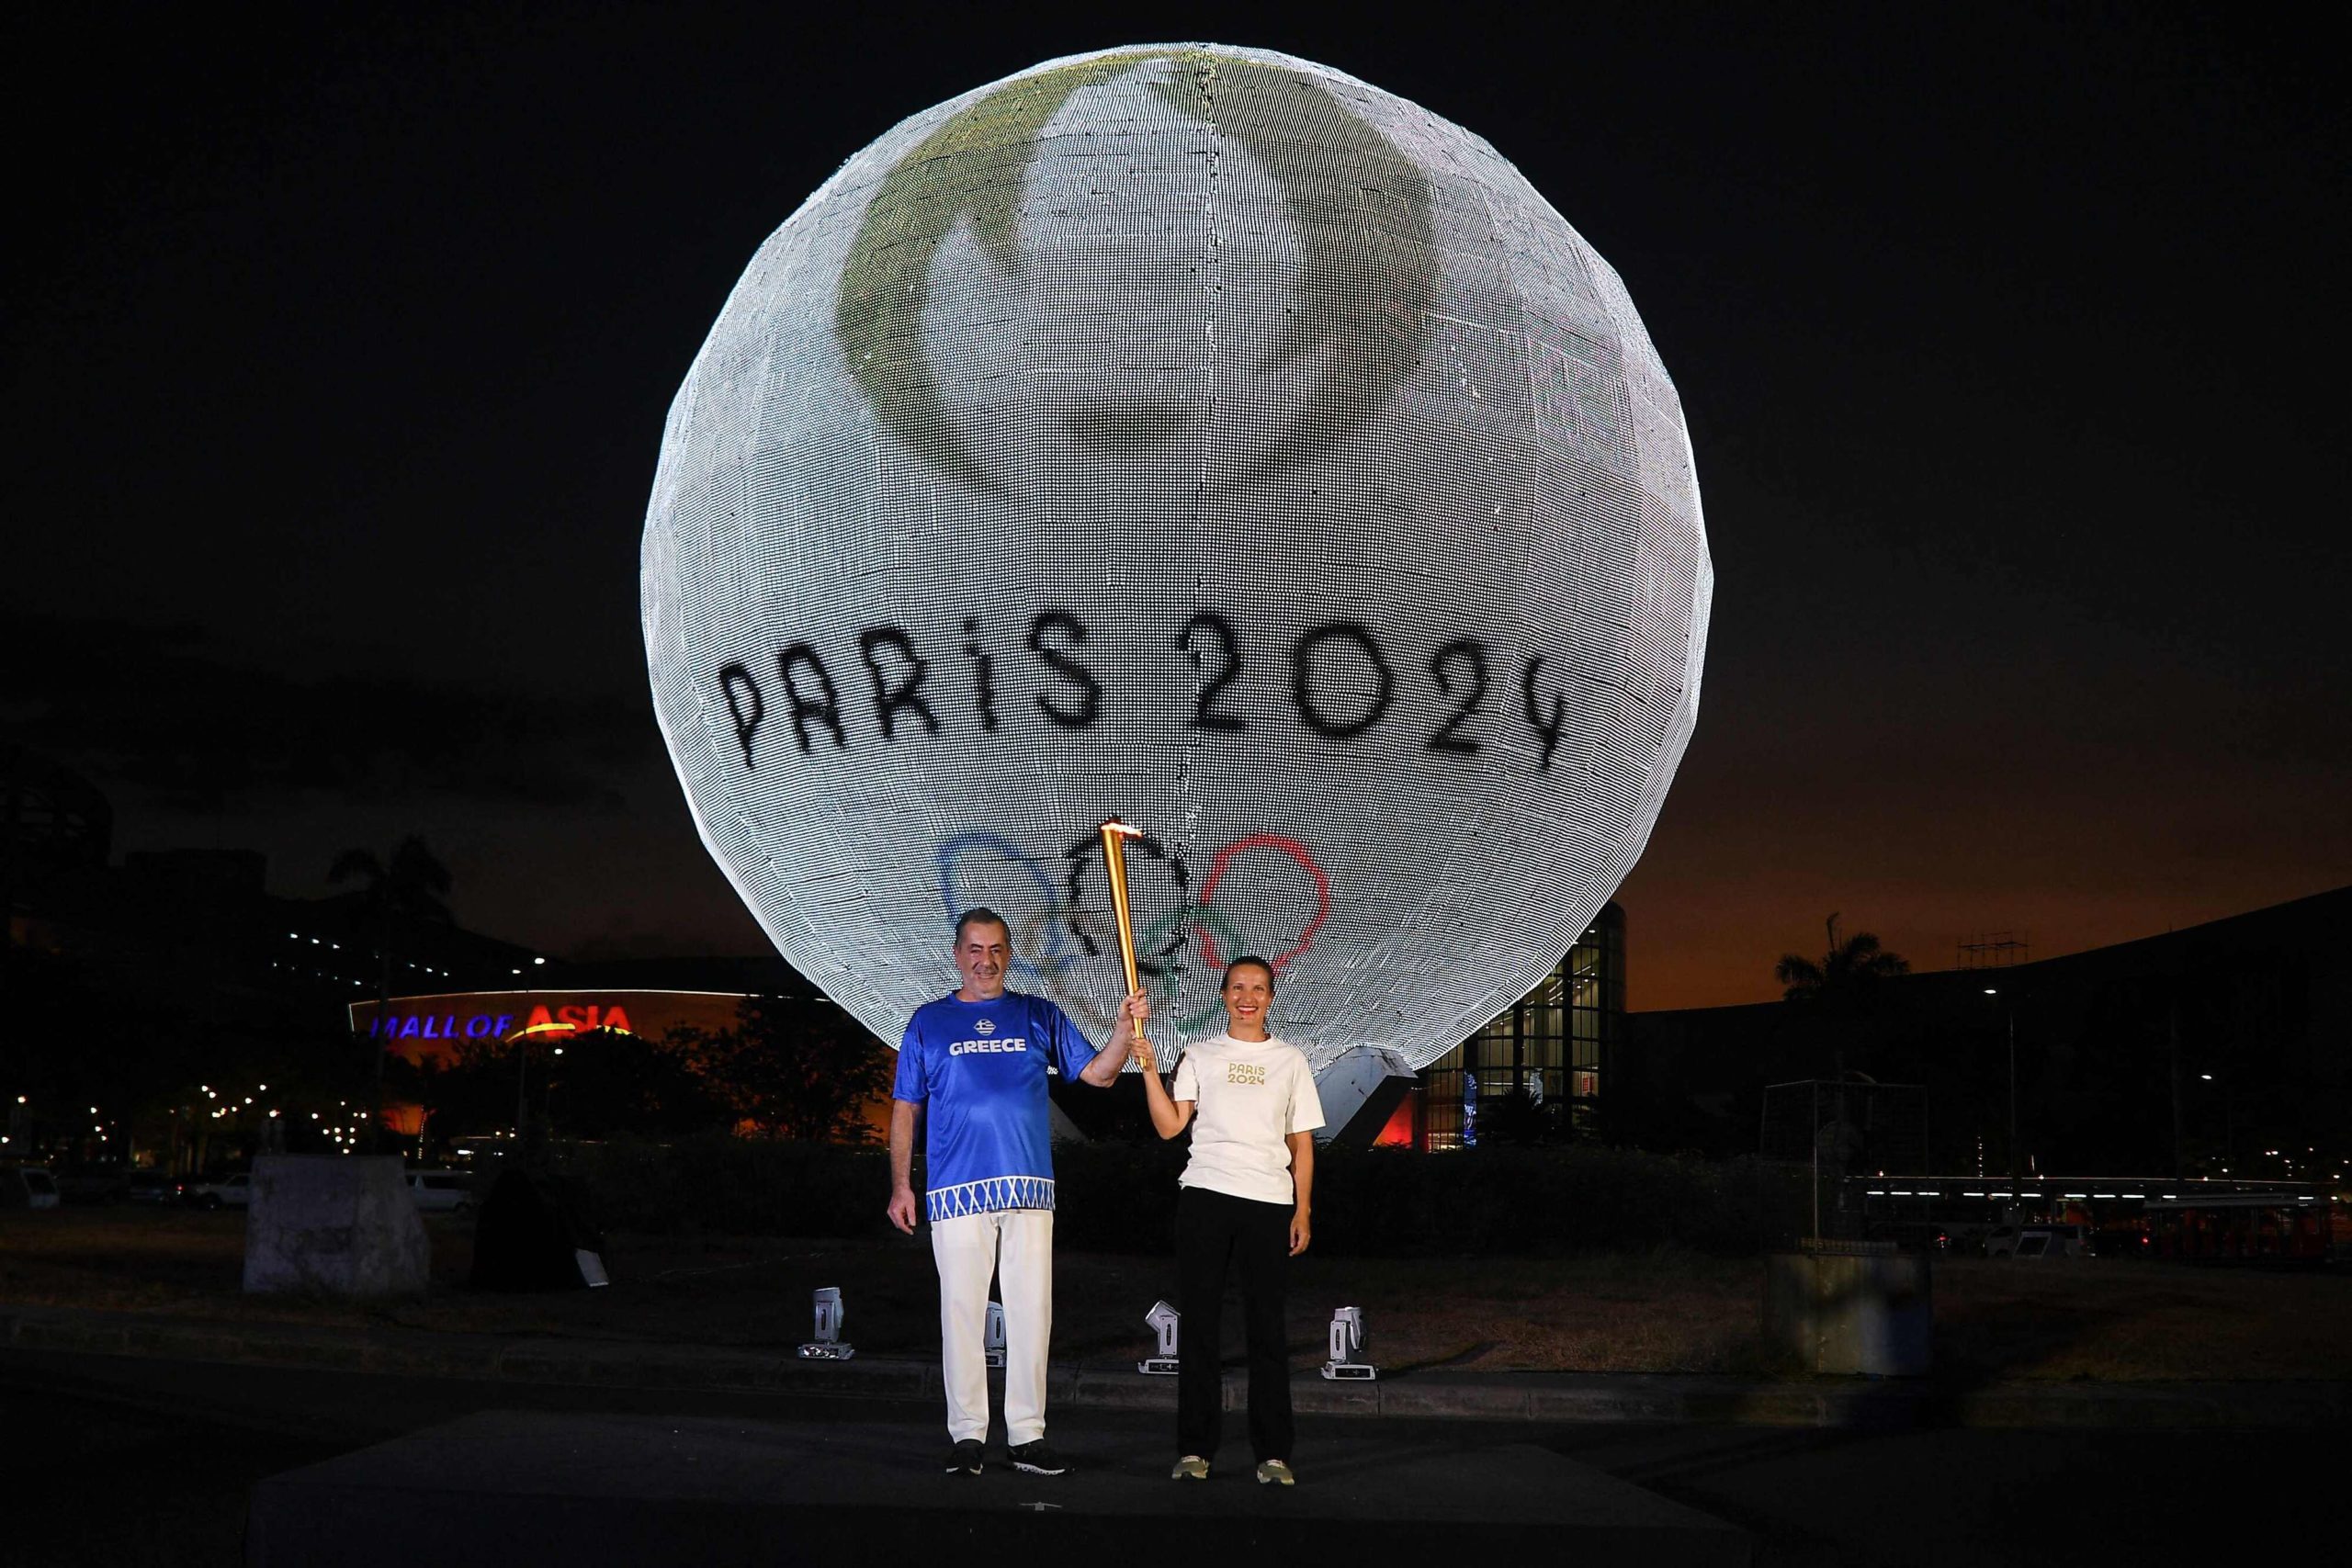 الألعاب الأولمبية المقررة هذا الصيف في باريس